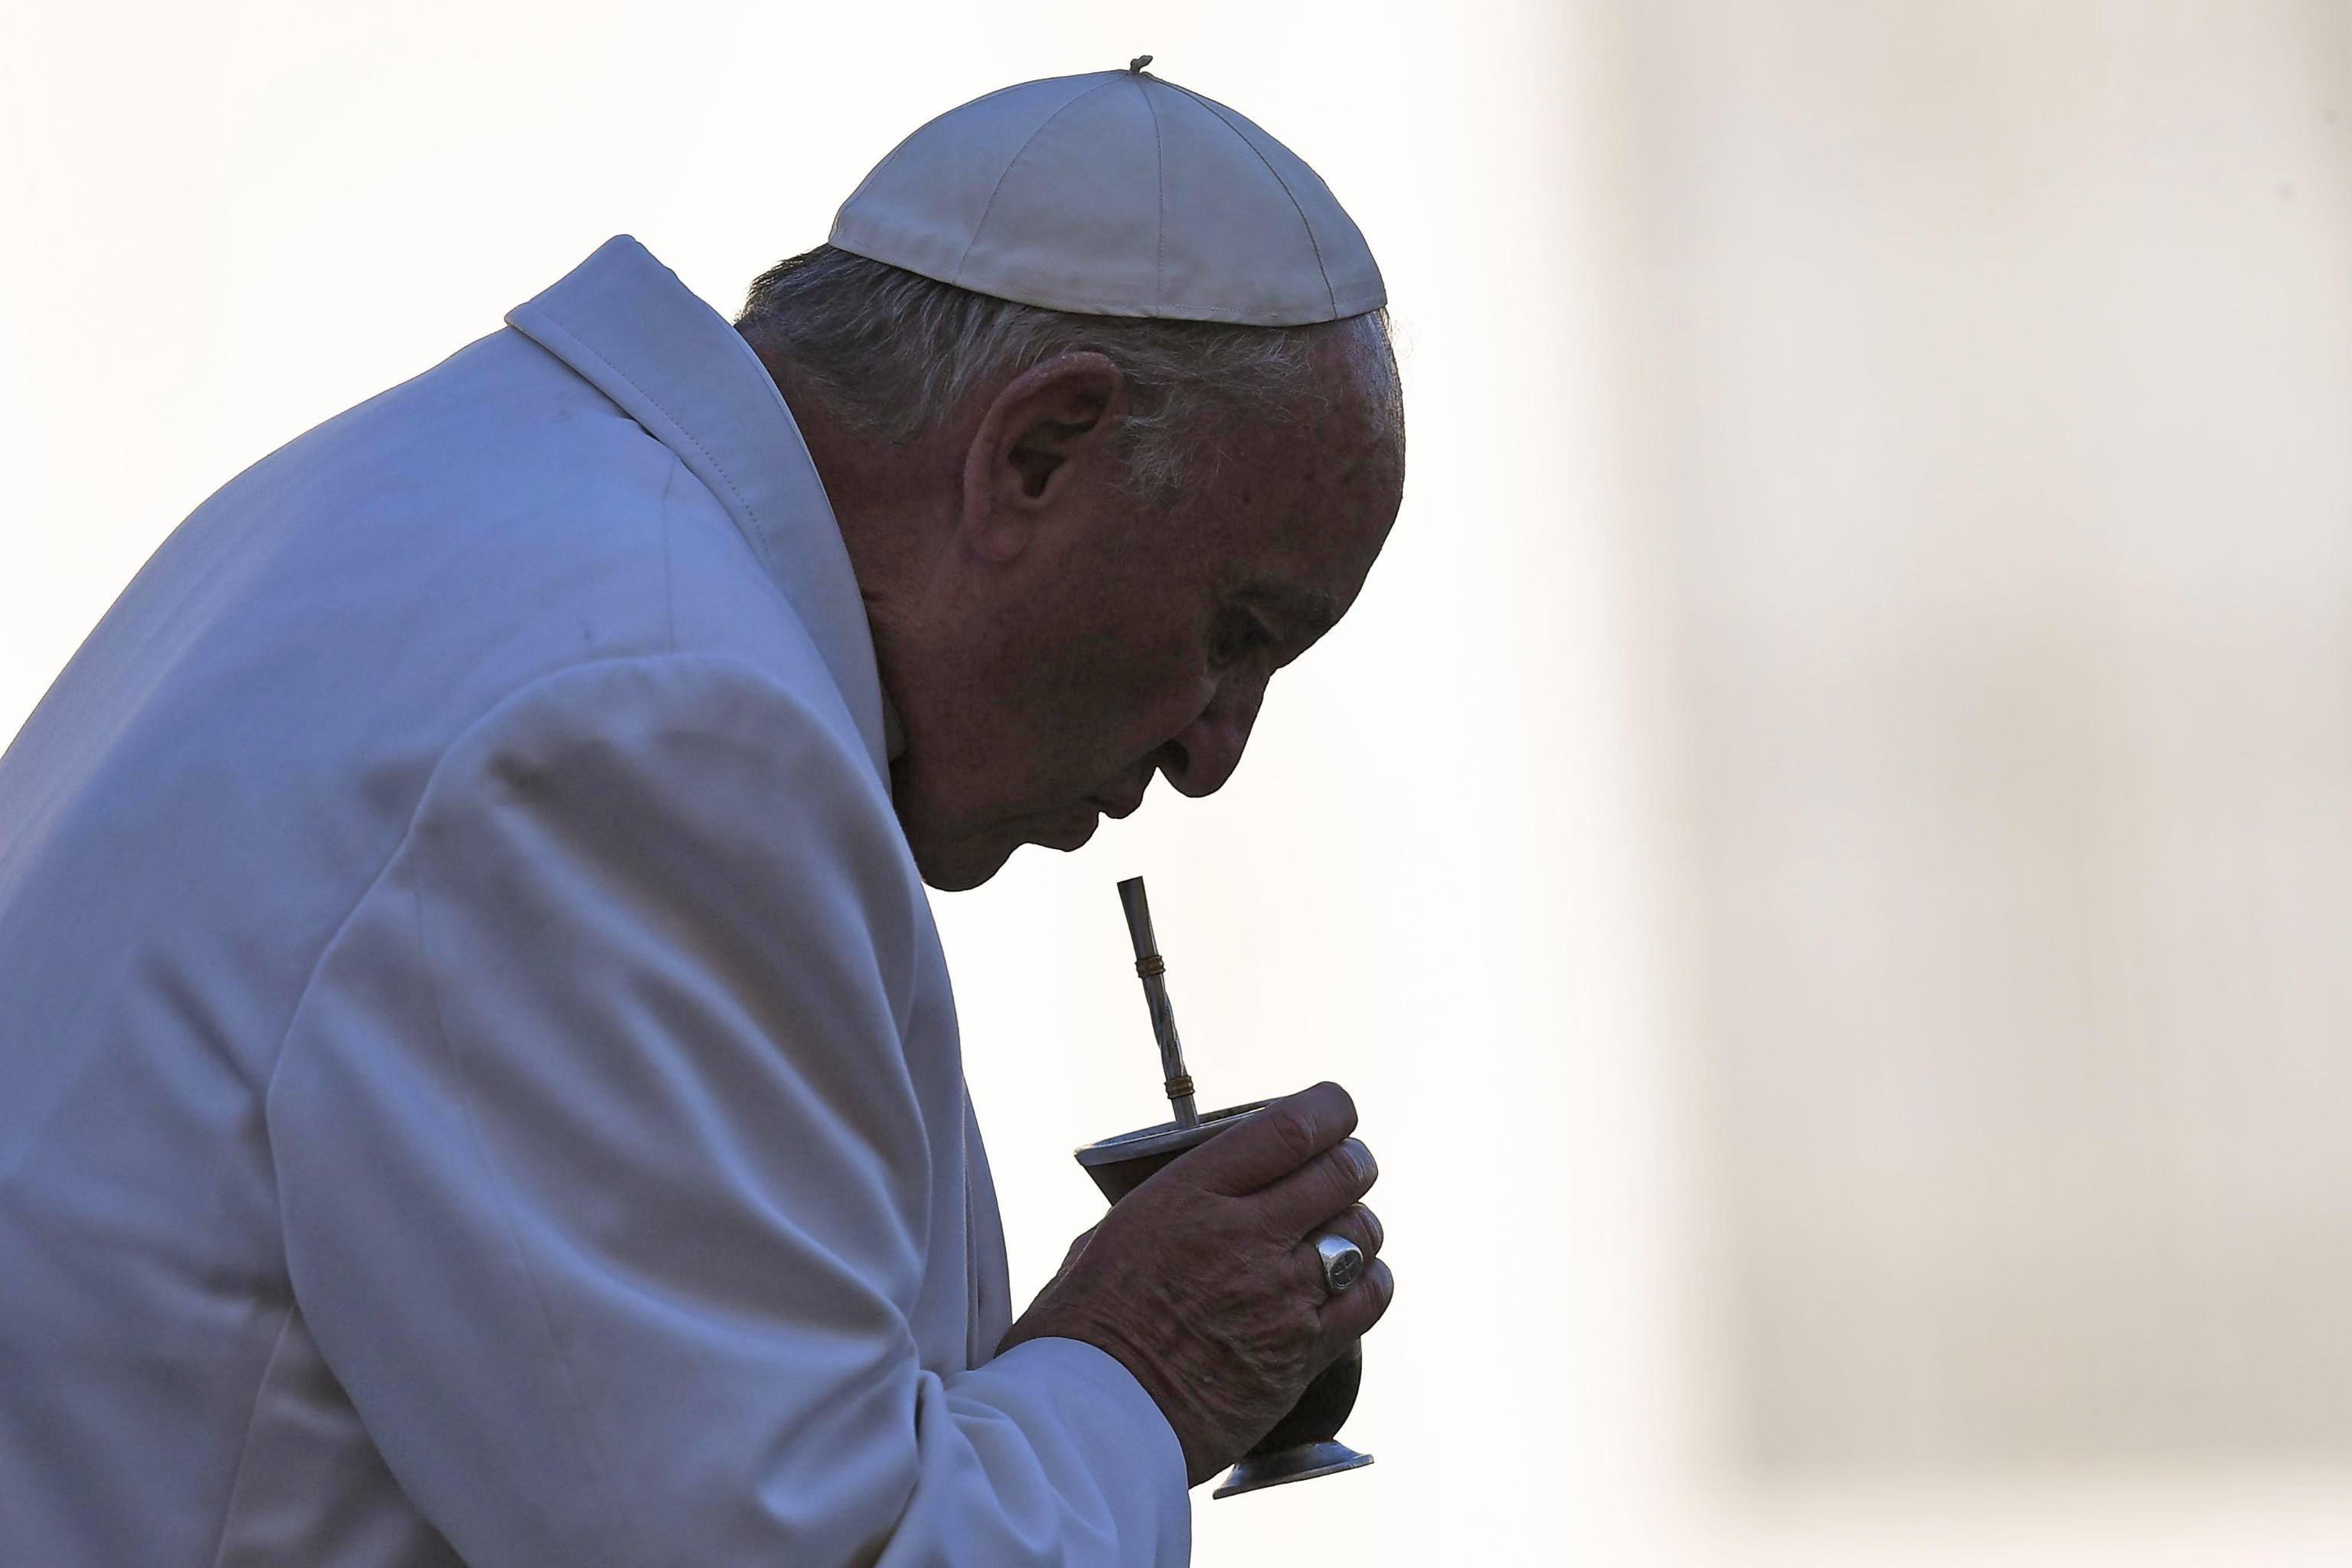 Noticias falsas son como “el diablo disfrazado de serpiente”: Papa